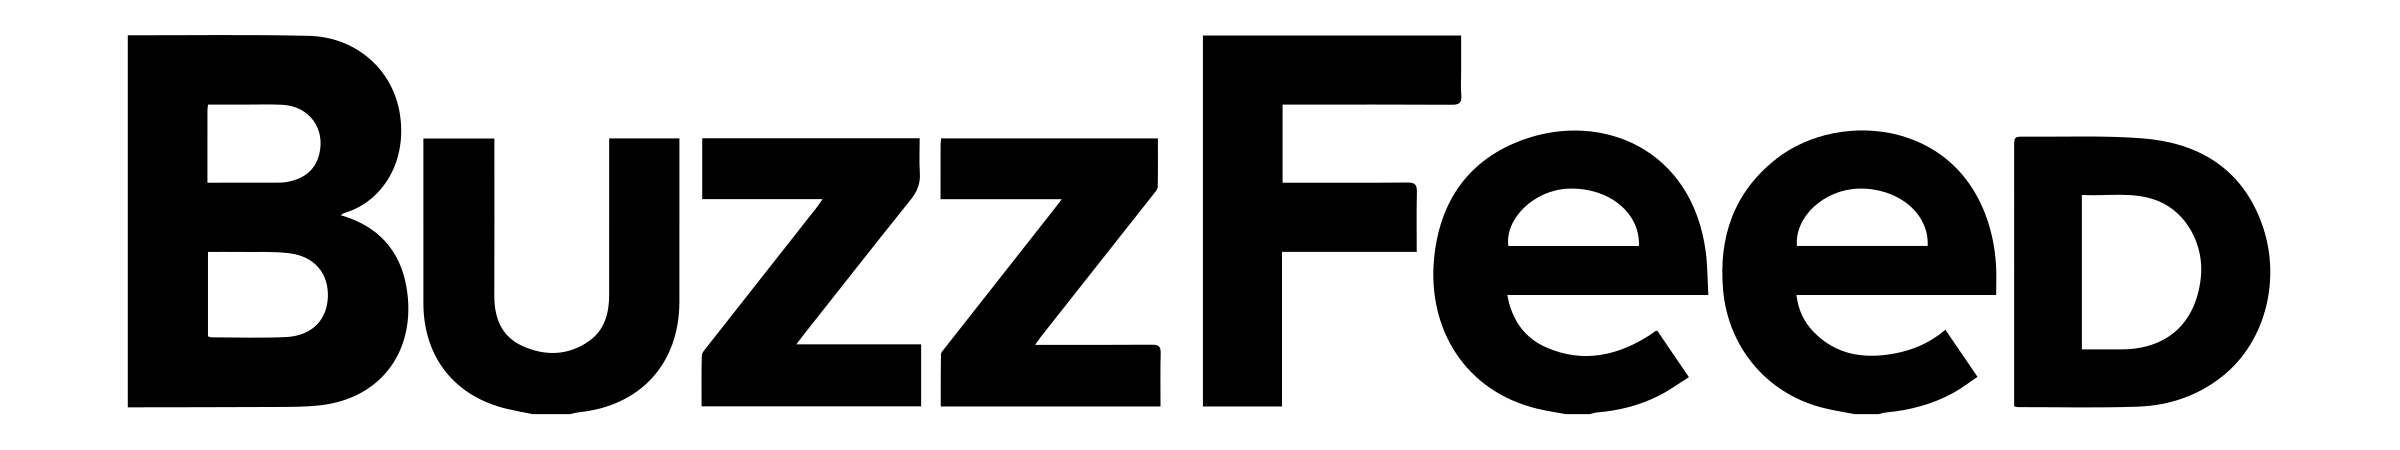 Buzzfeed Logo PNG HD